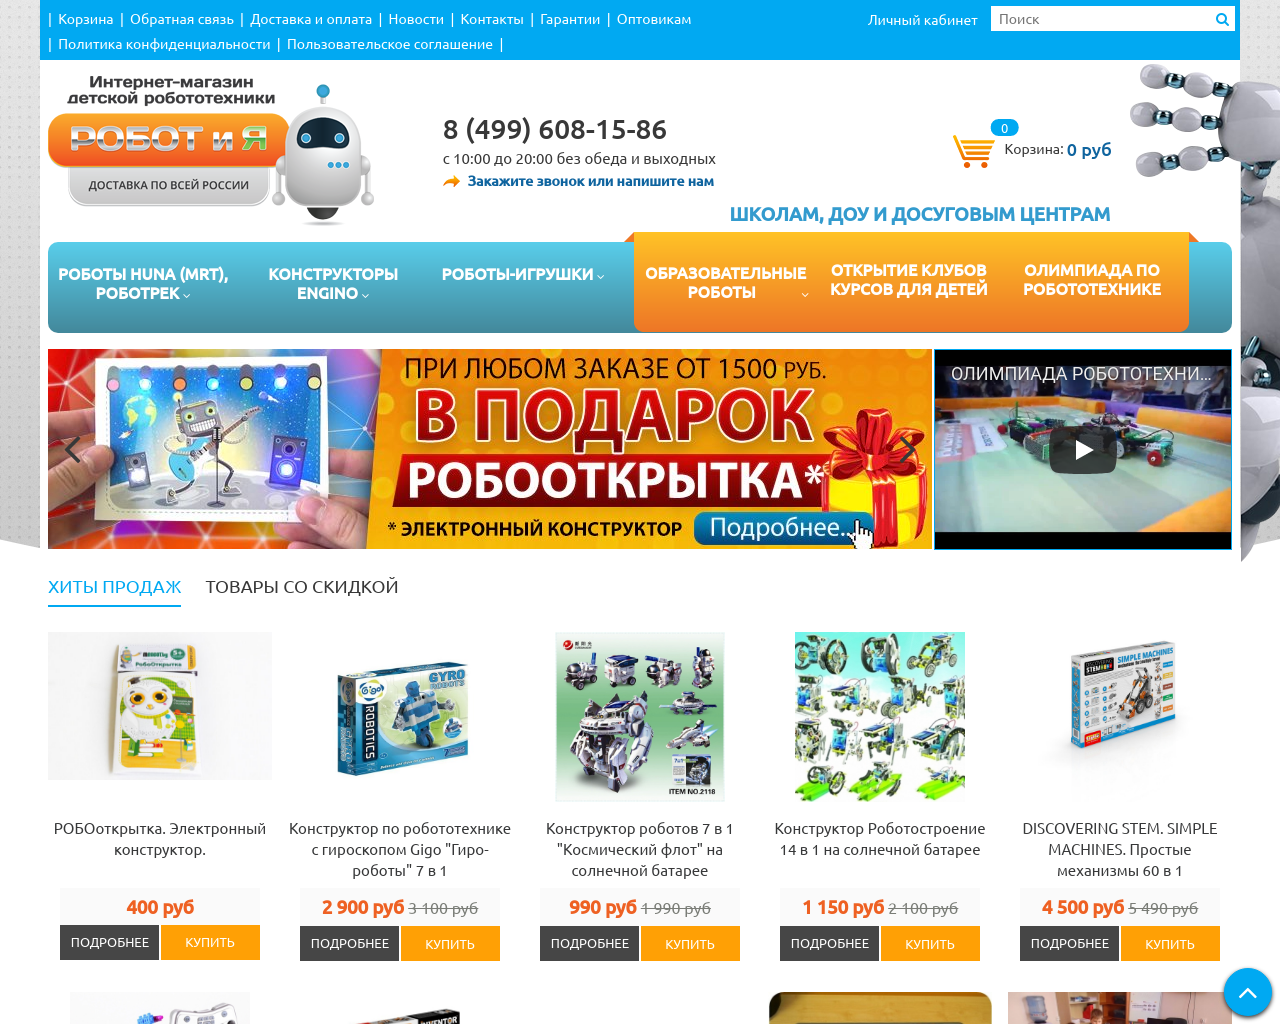 Изображение сайта robots-toys.ru в разрешении 1280x1024